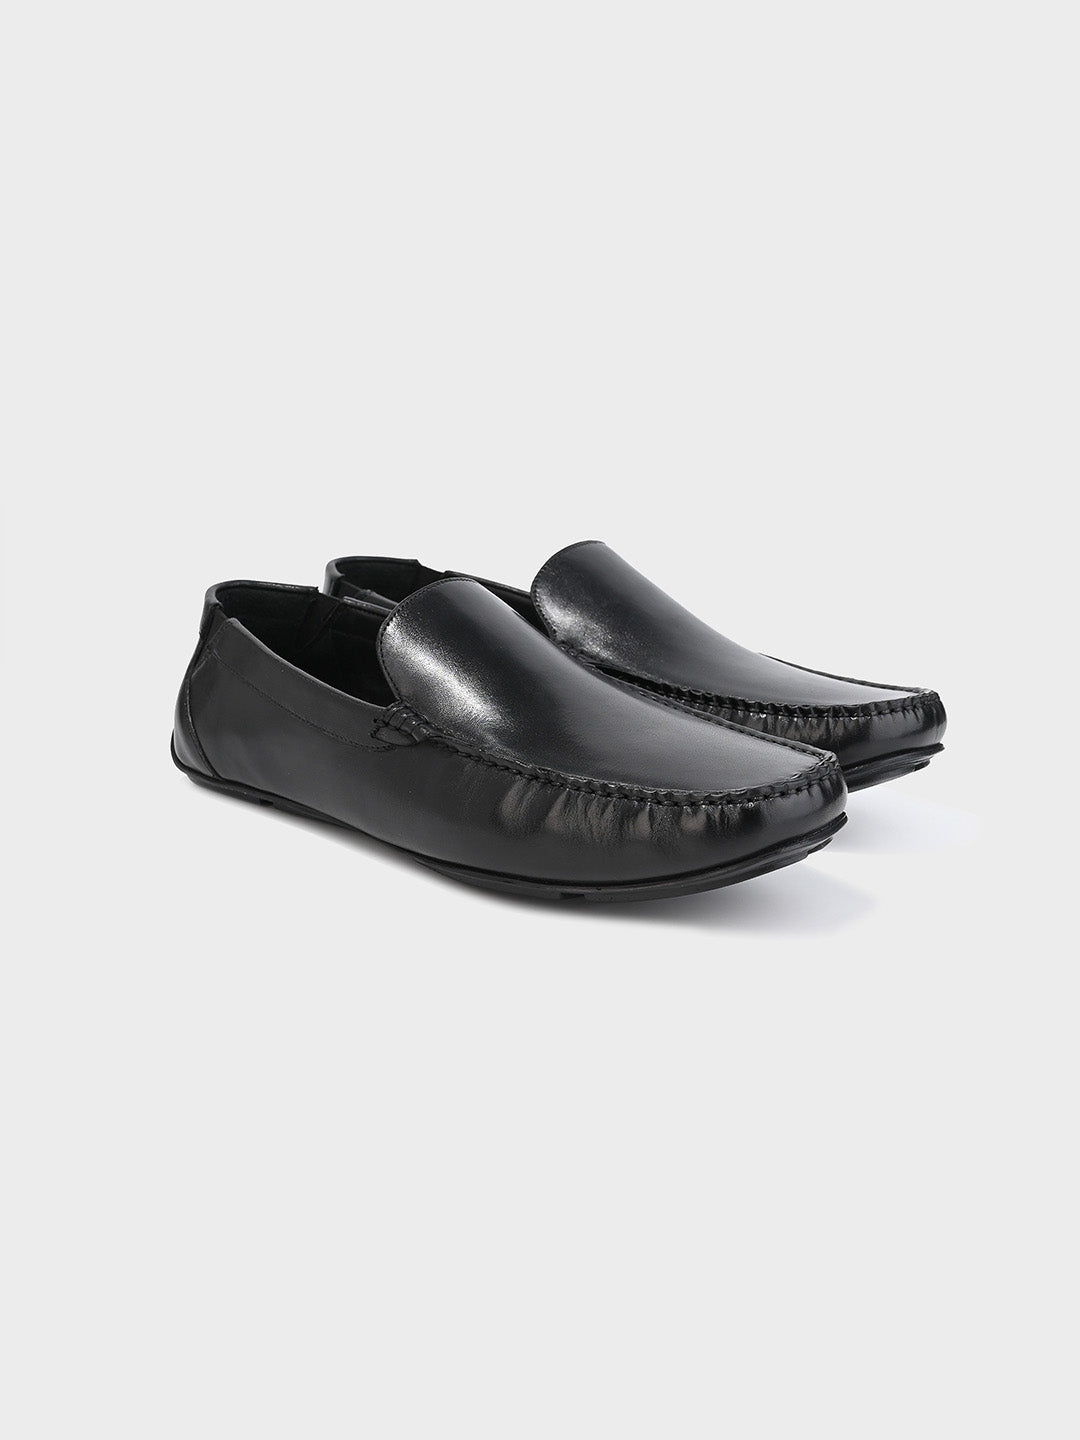 Men's Black Leather Slip-On Loafers